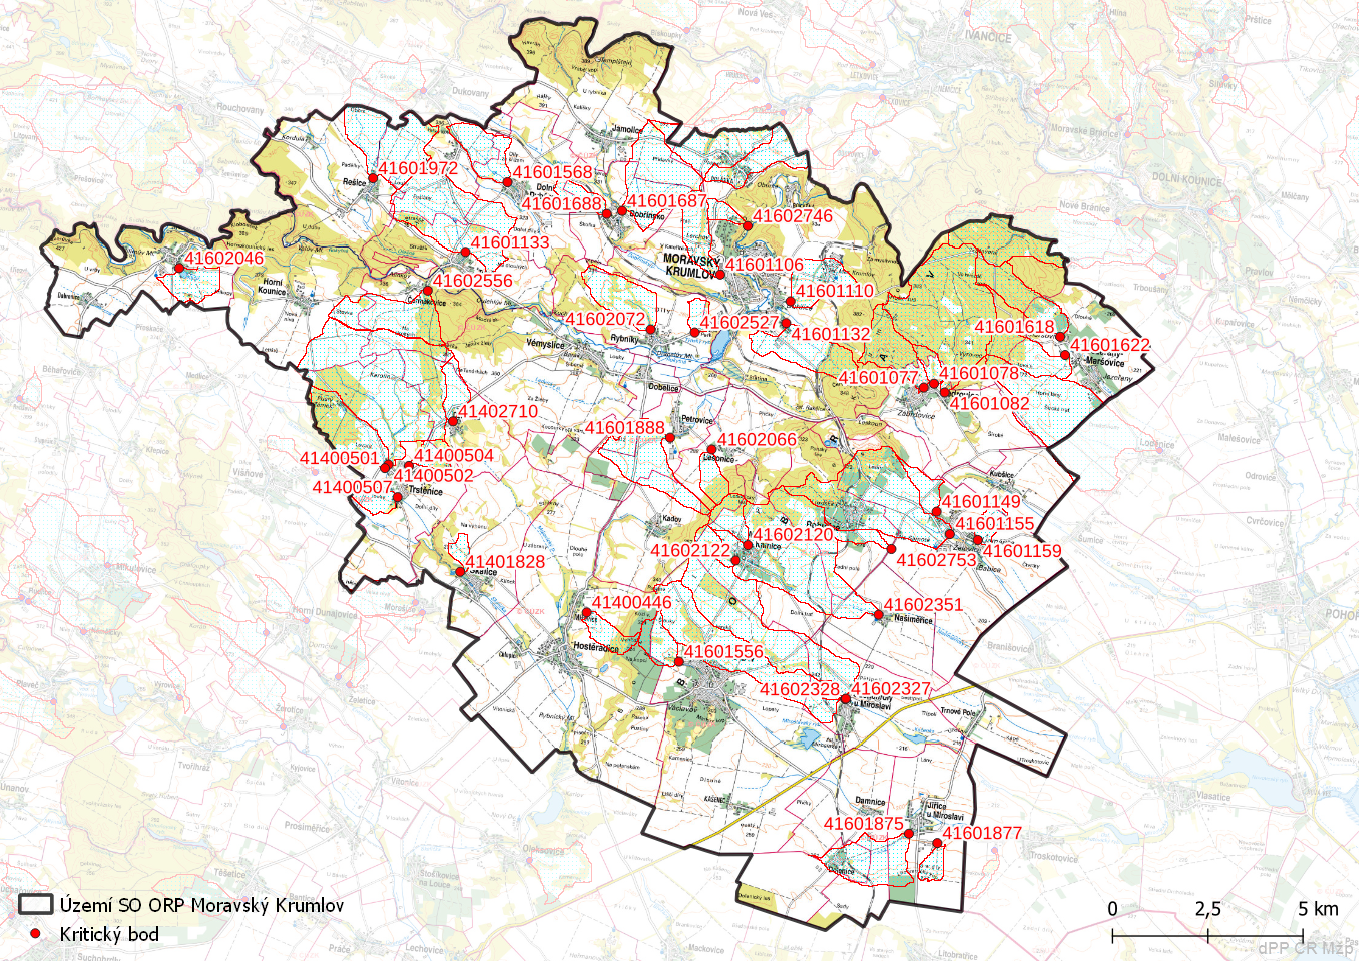 Zhodnocení vzniku přívalových povodní na území SO ORP Moravský Krumlov metodou kritických bodů